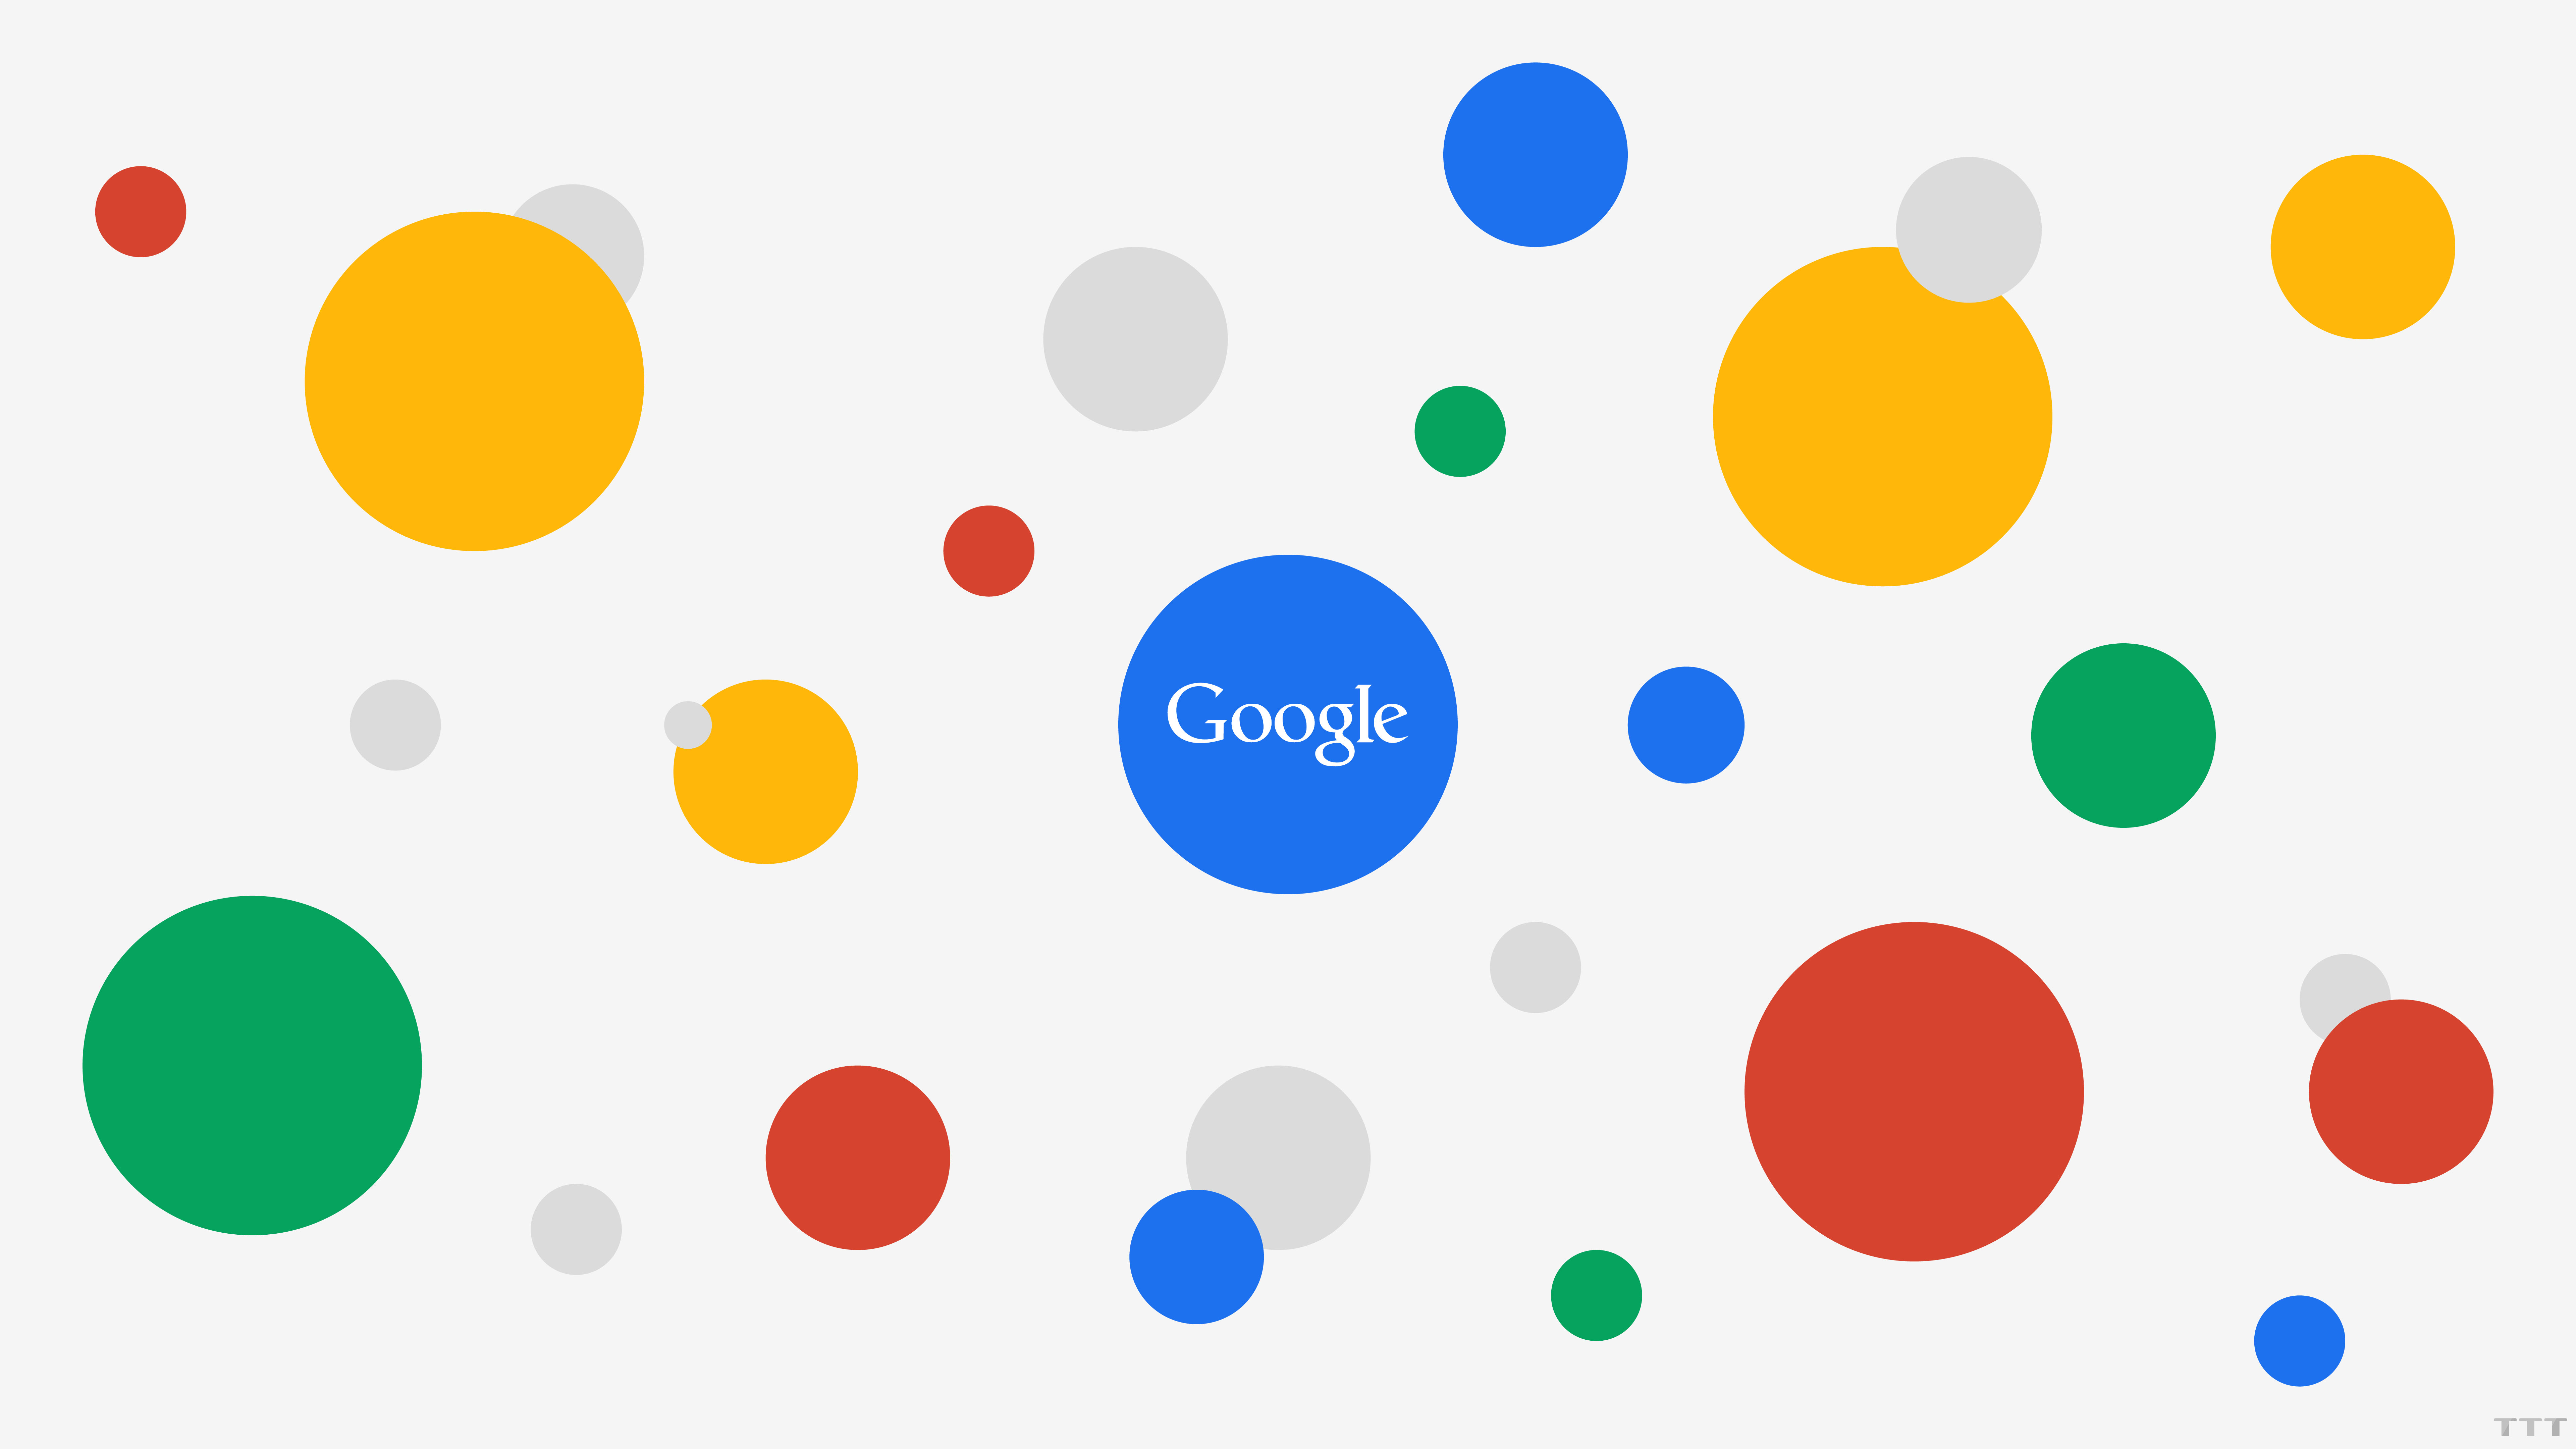 Hình nền Google thẩm mỹ: Hình nền của Google không chỉ đơn giản là hình nền, nó còn là một tác phẩm nghệ thuật thẩm mỹ. Hãy xem hình ảnh để thấy sự tinh tế và đẹp mắt của các hình nền Google với nhiều chủ đề khác nhau.